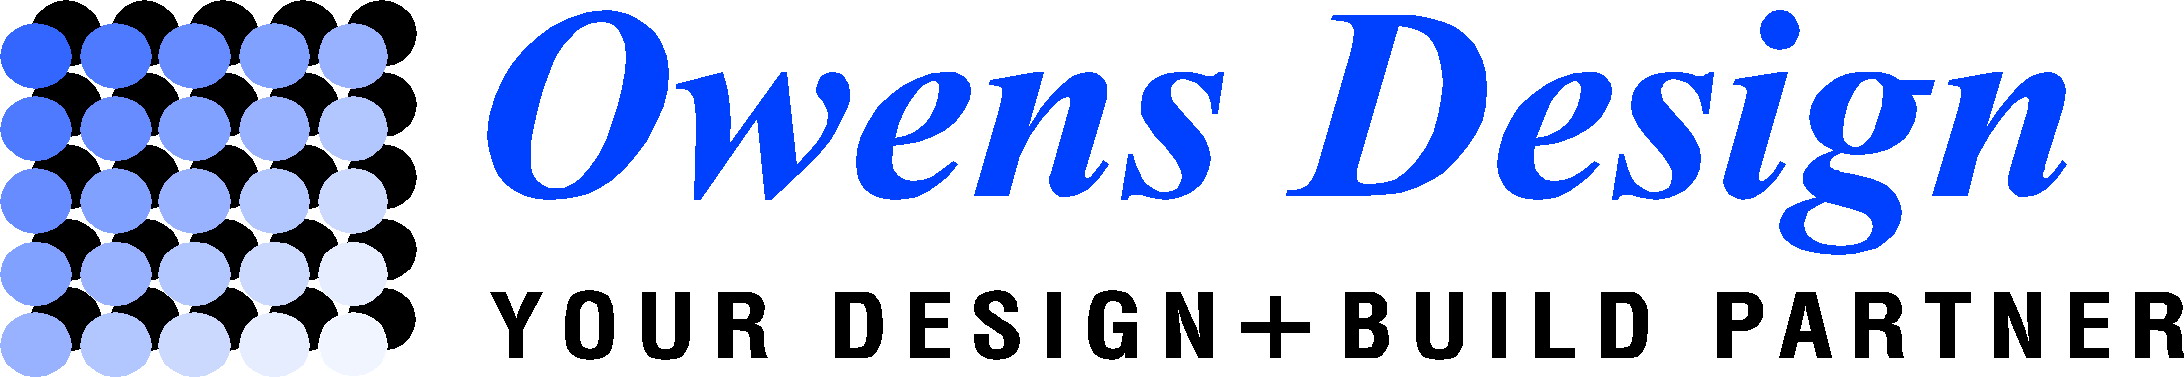 Owens Design Inc.